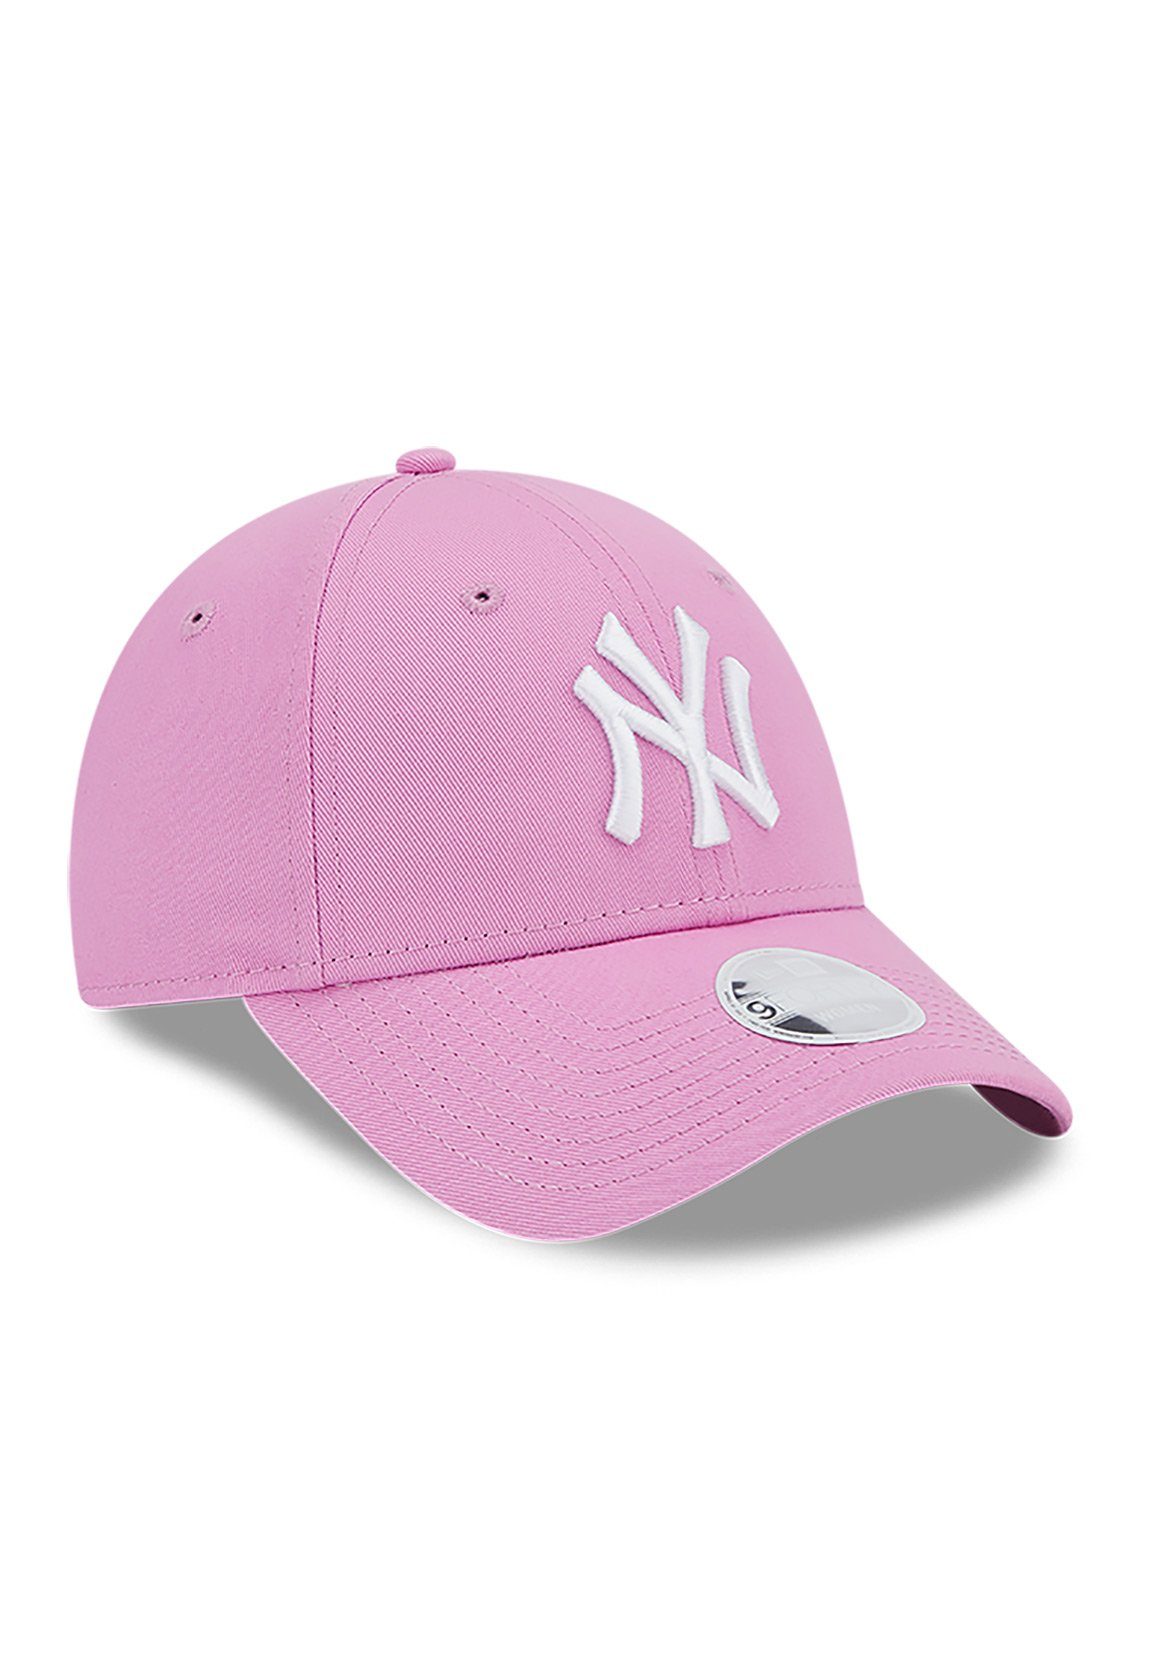 9Forty Era Era League Cap Damen Wmns YANKEES Adjustable Ess New New Cap Pink NY rosa Baseball